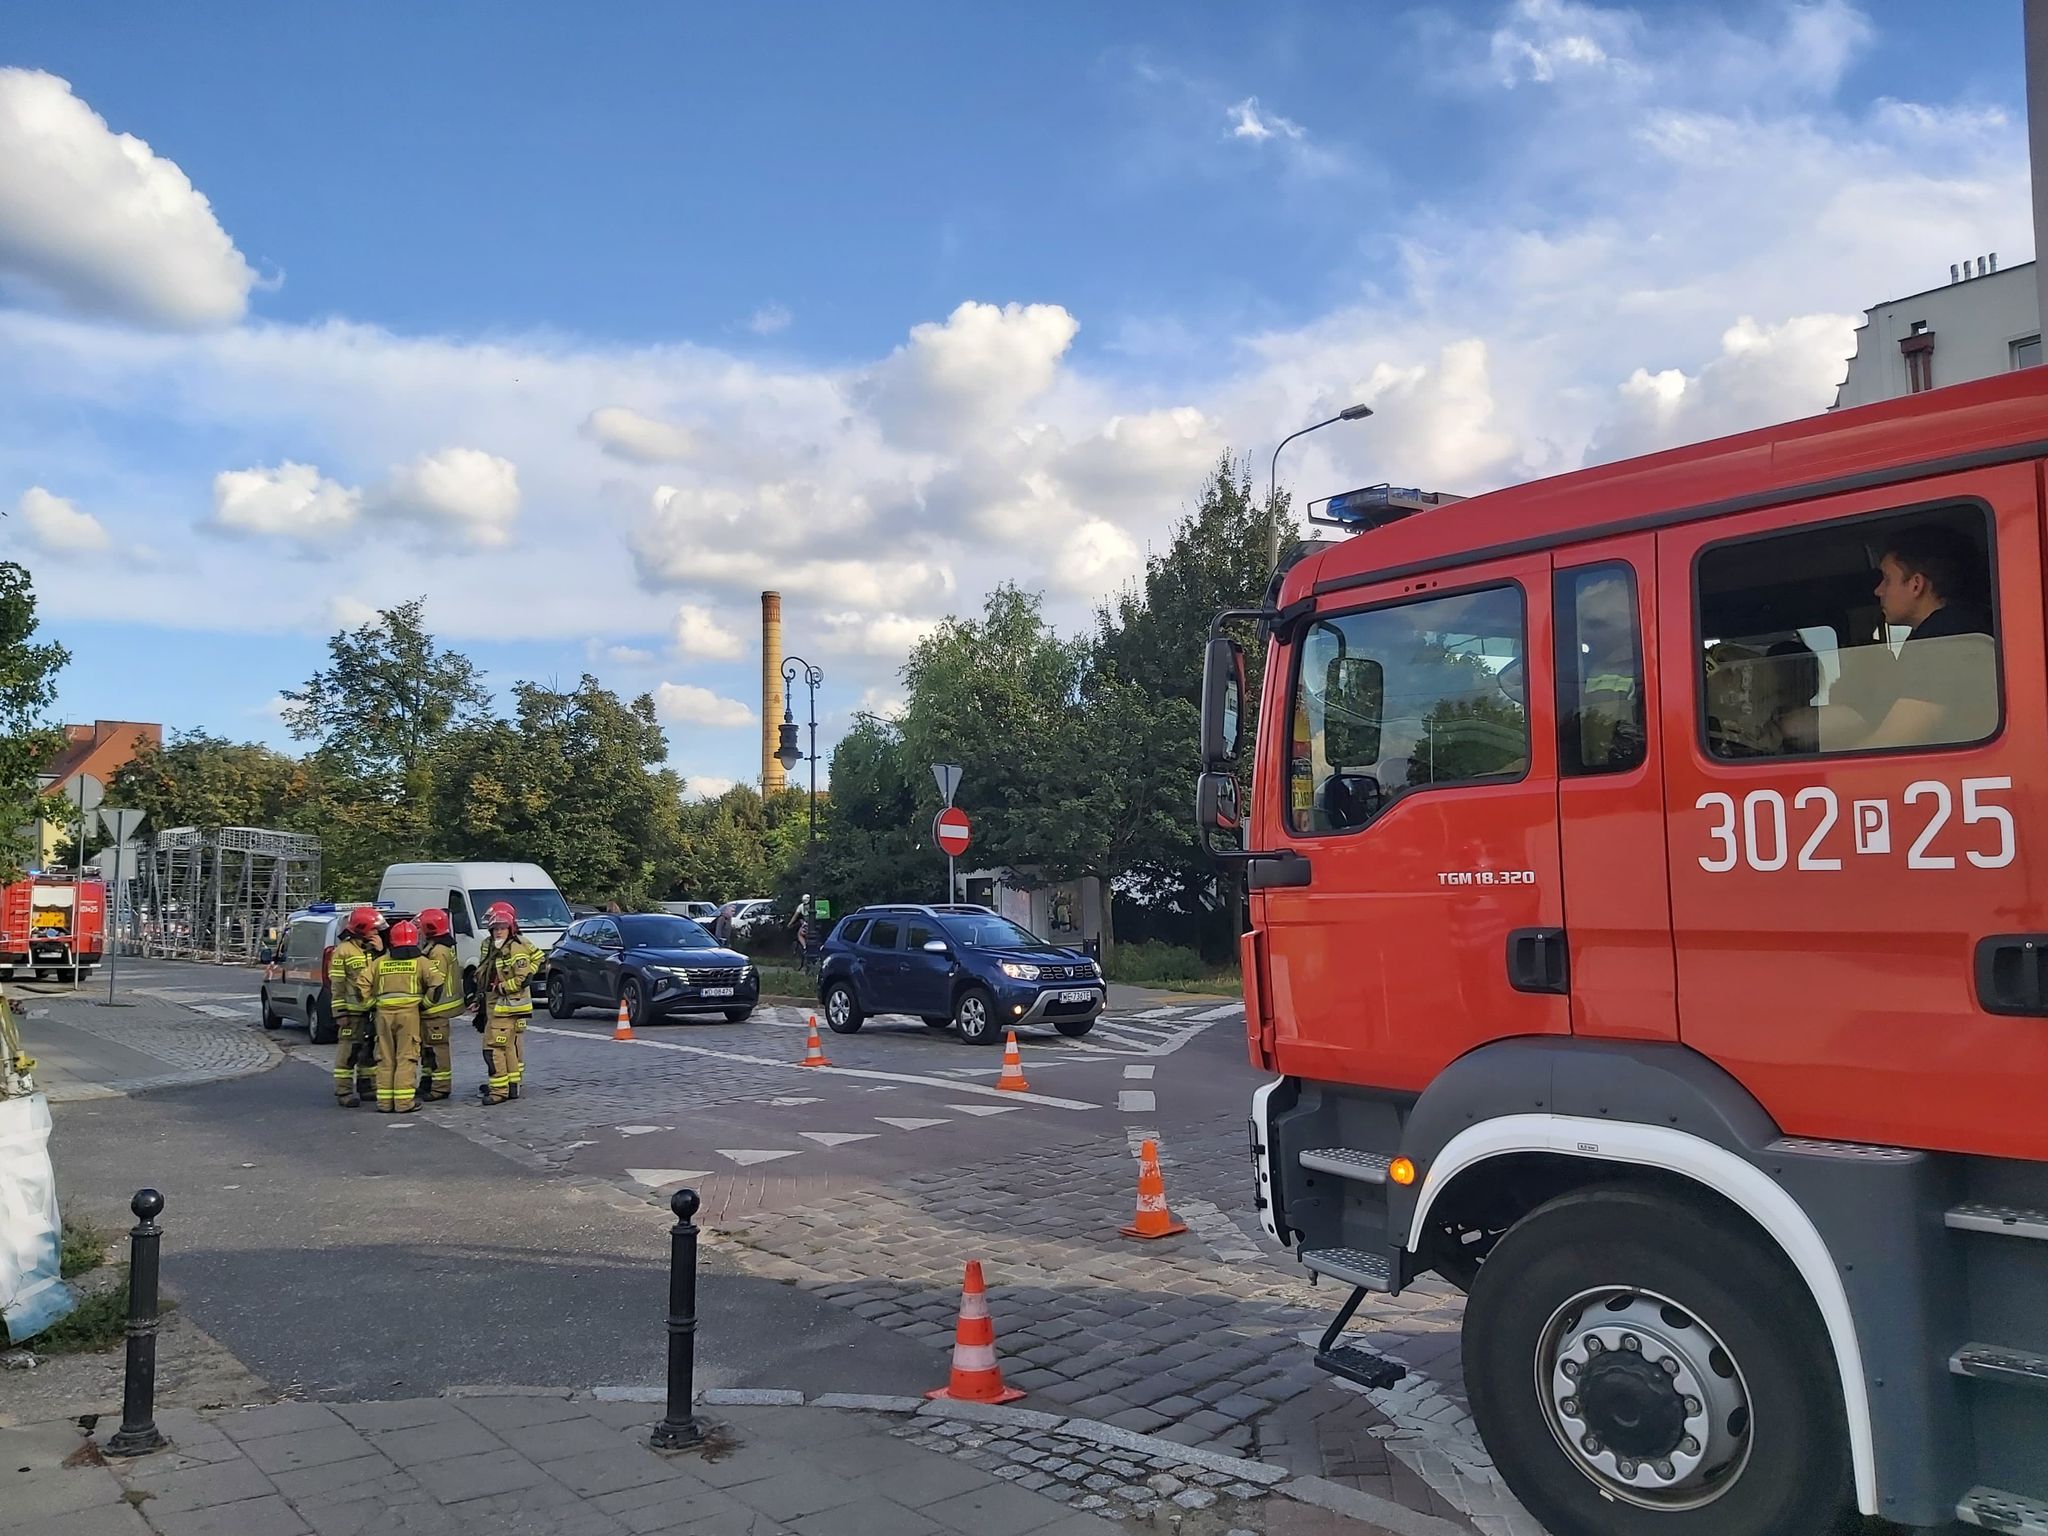  Uszkodzona rura z gazem na poznańskim Starym Rynku - Krzysztof Polasik